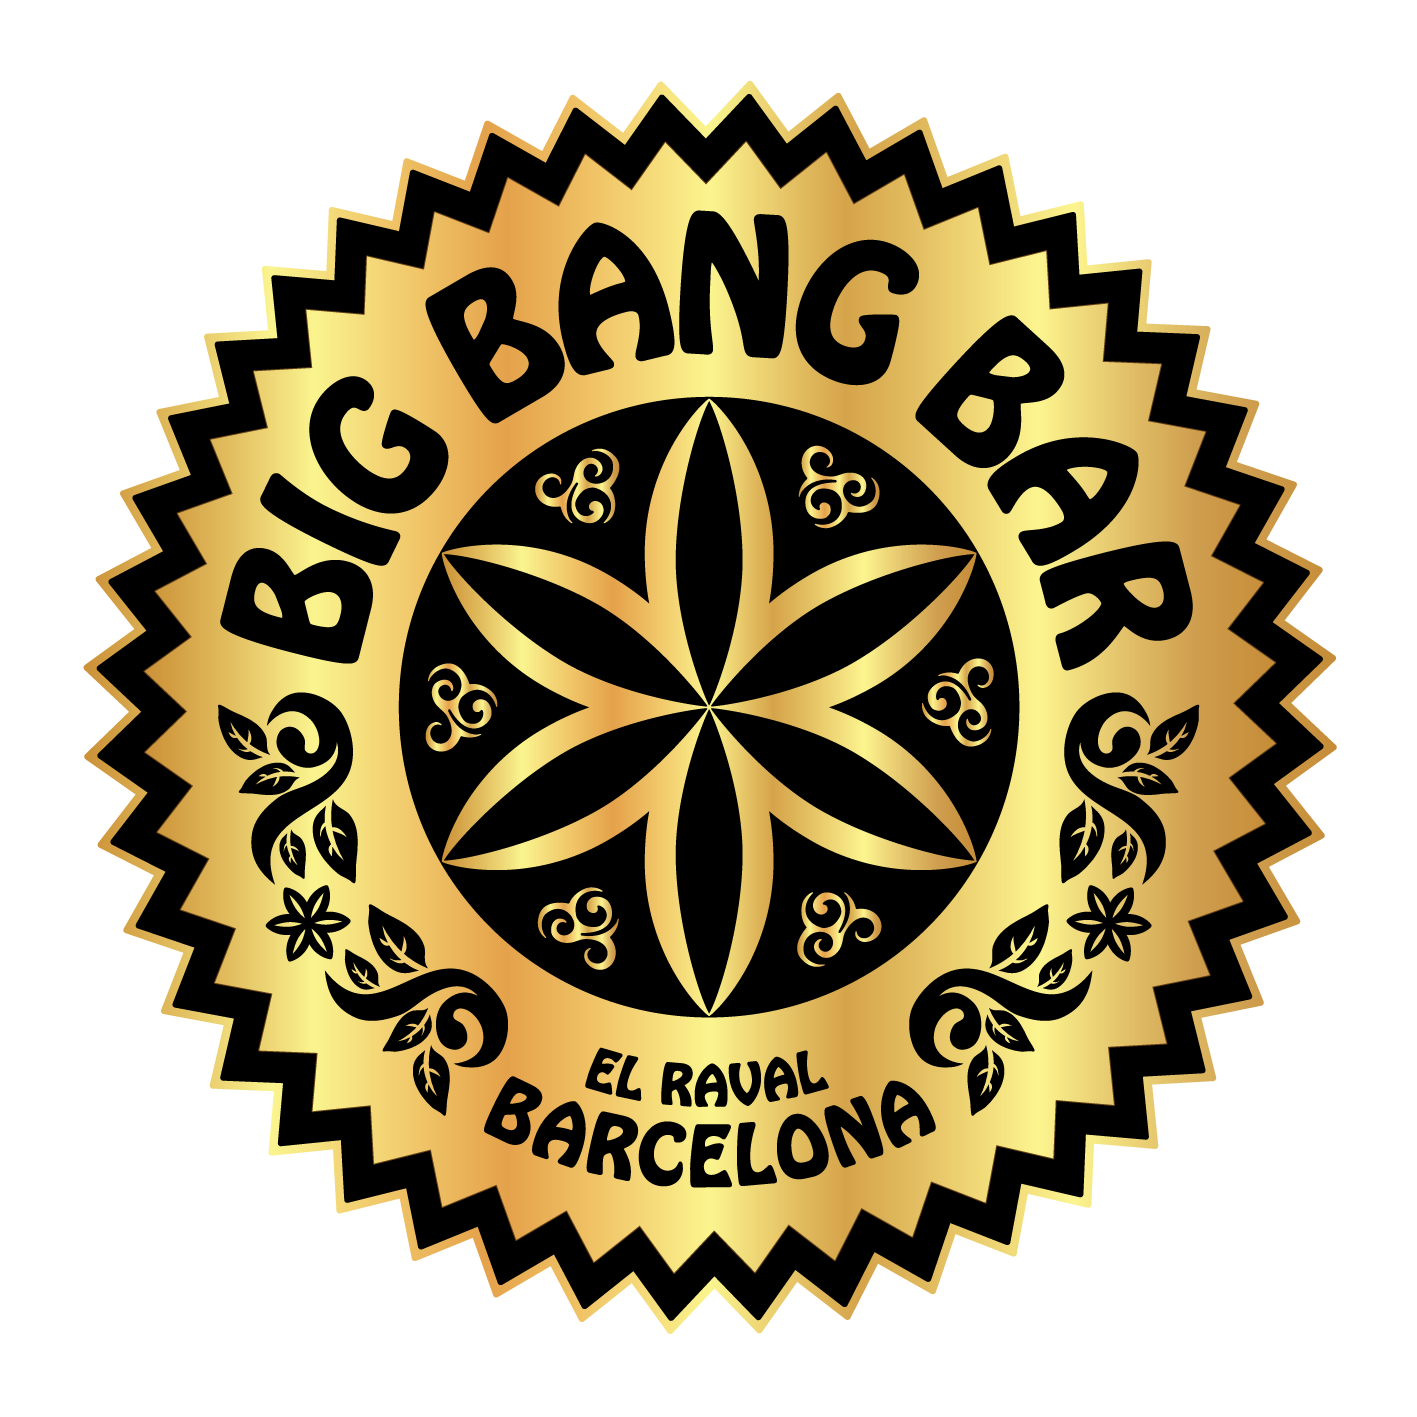 BIG BANG BAR